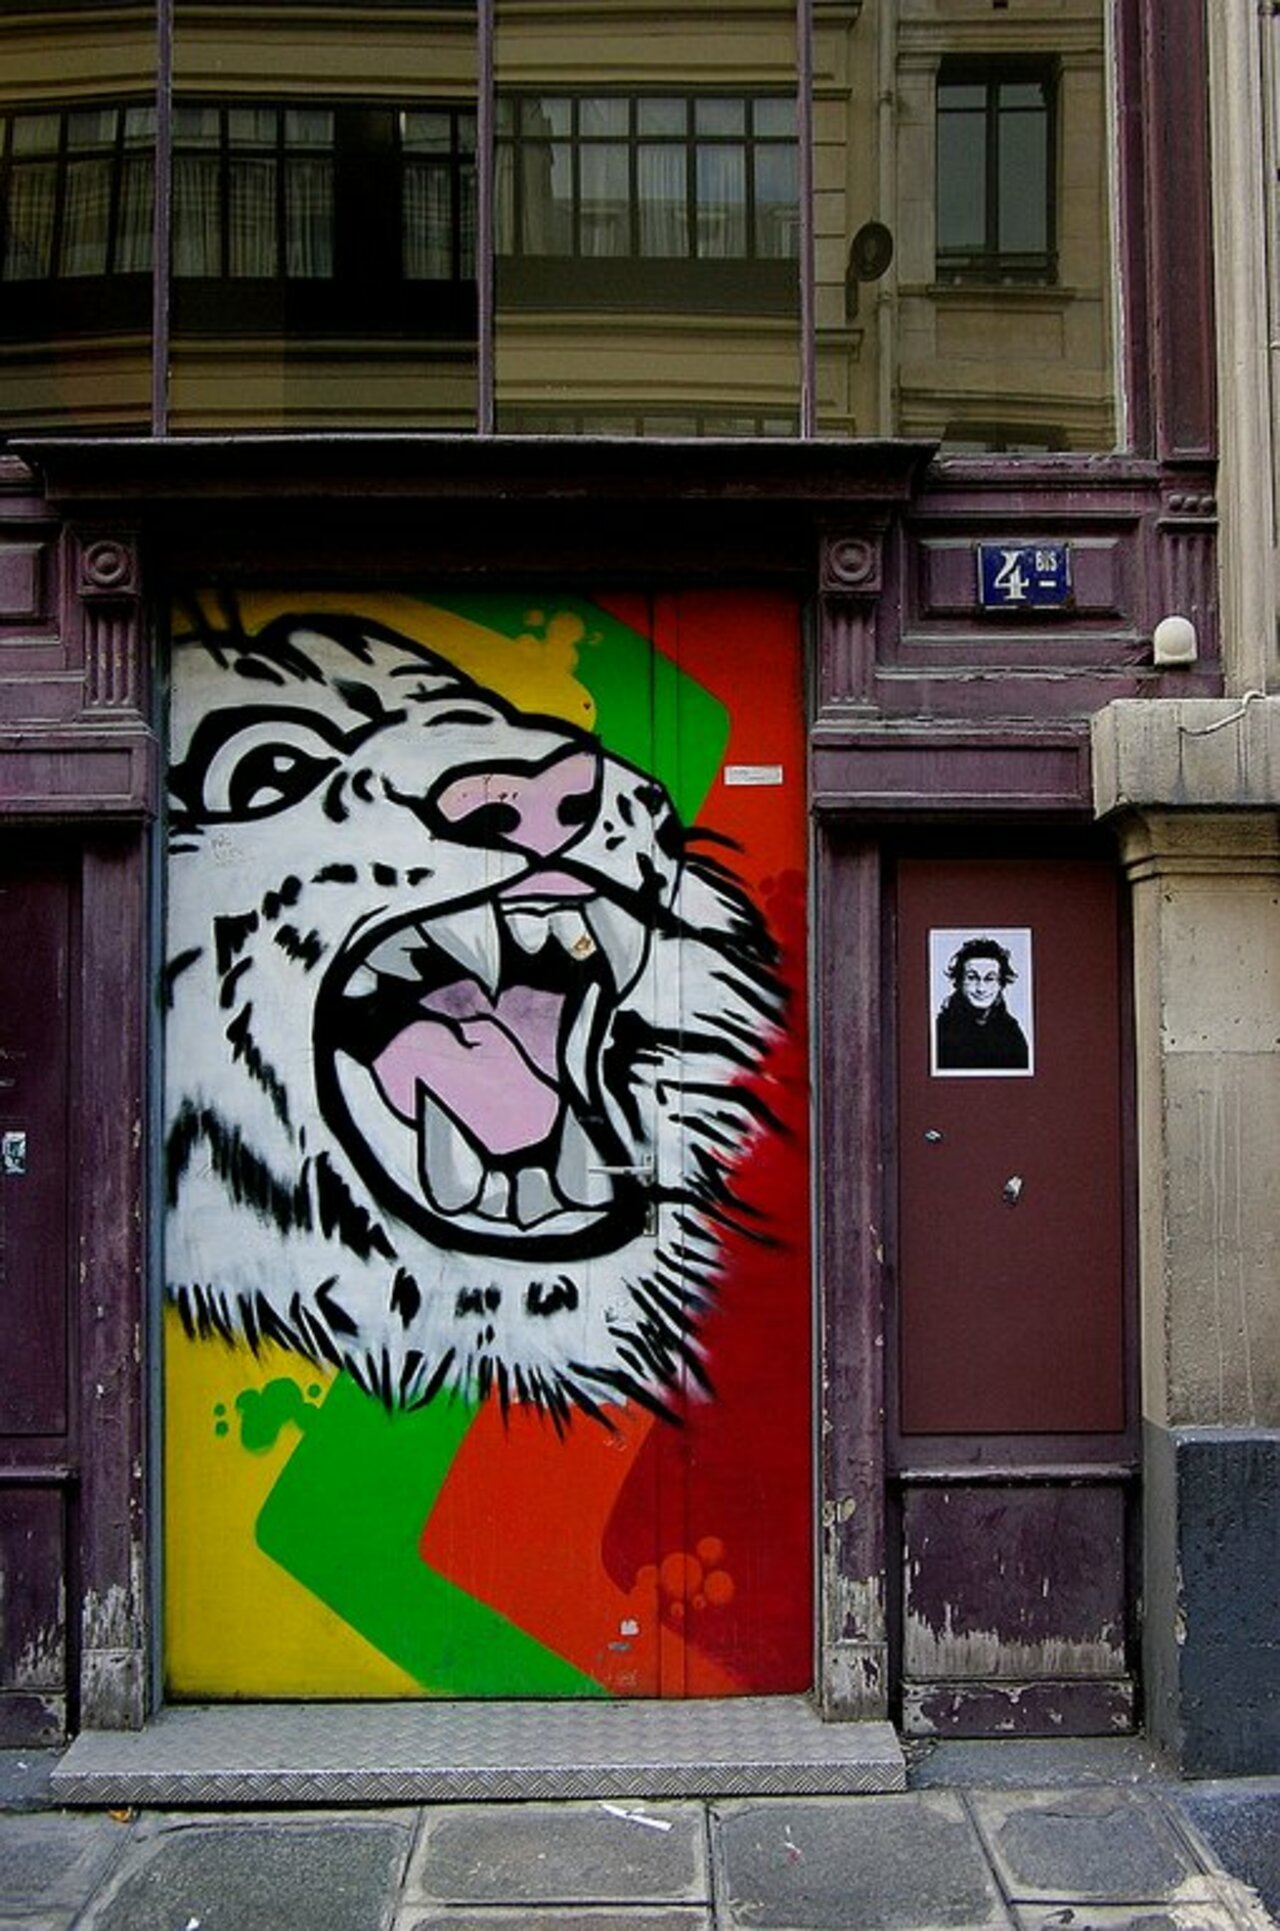 Street Art by Nojnoma in #Paris http://www.urbacolors.com #art #mural #graffiti #streetart https://t.co/eOJvGusHao